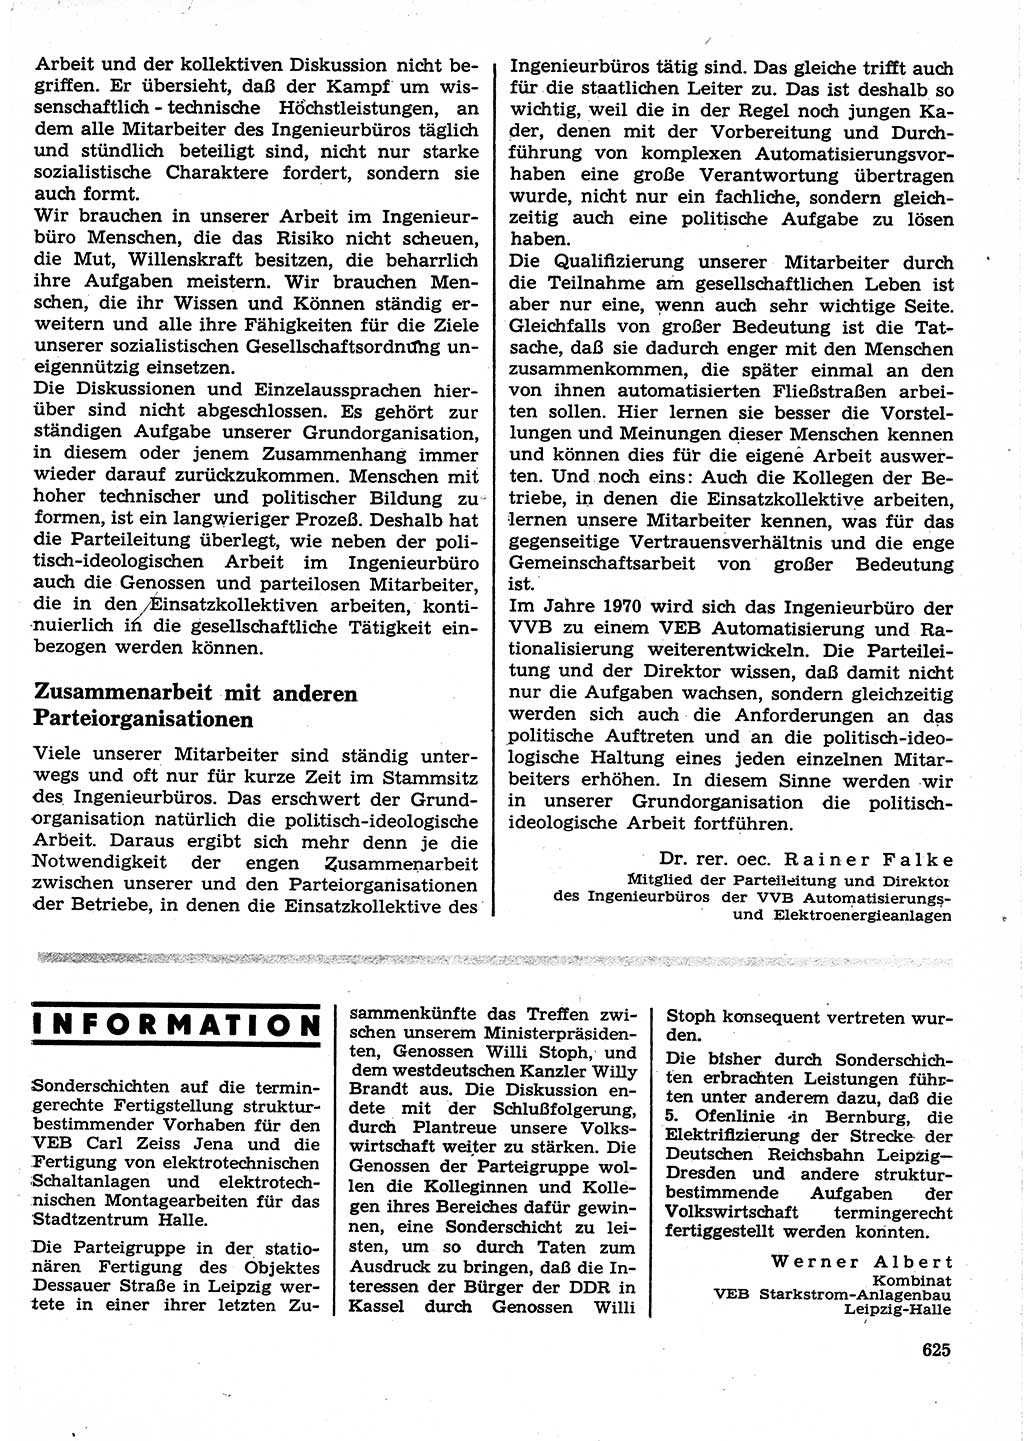 Neuer Weg (NW), Organ des Zentralkomitees (ZK) der SED (Sozialistische Einheitspartei Deutschlands) für Fragen des Parteilebens, 25. Jahrgang [Deutsche Demokratische Republik (DDR)] 1970, Seite 625 (NW ZK SED DDR 1970, S. 625)